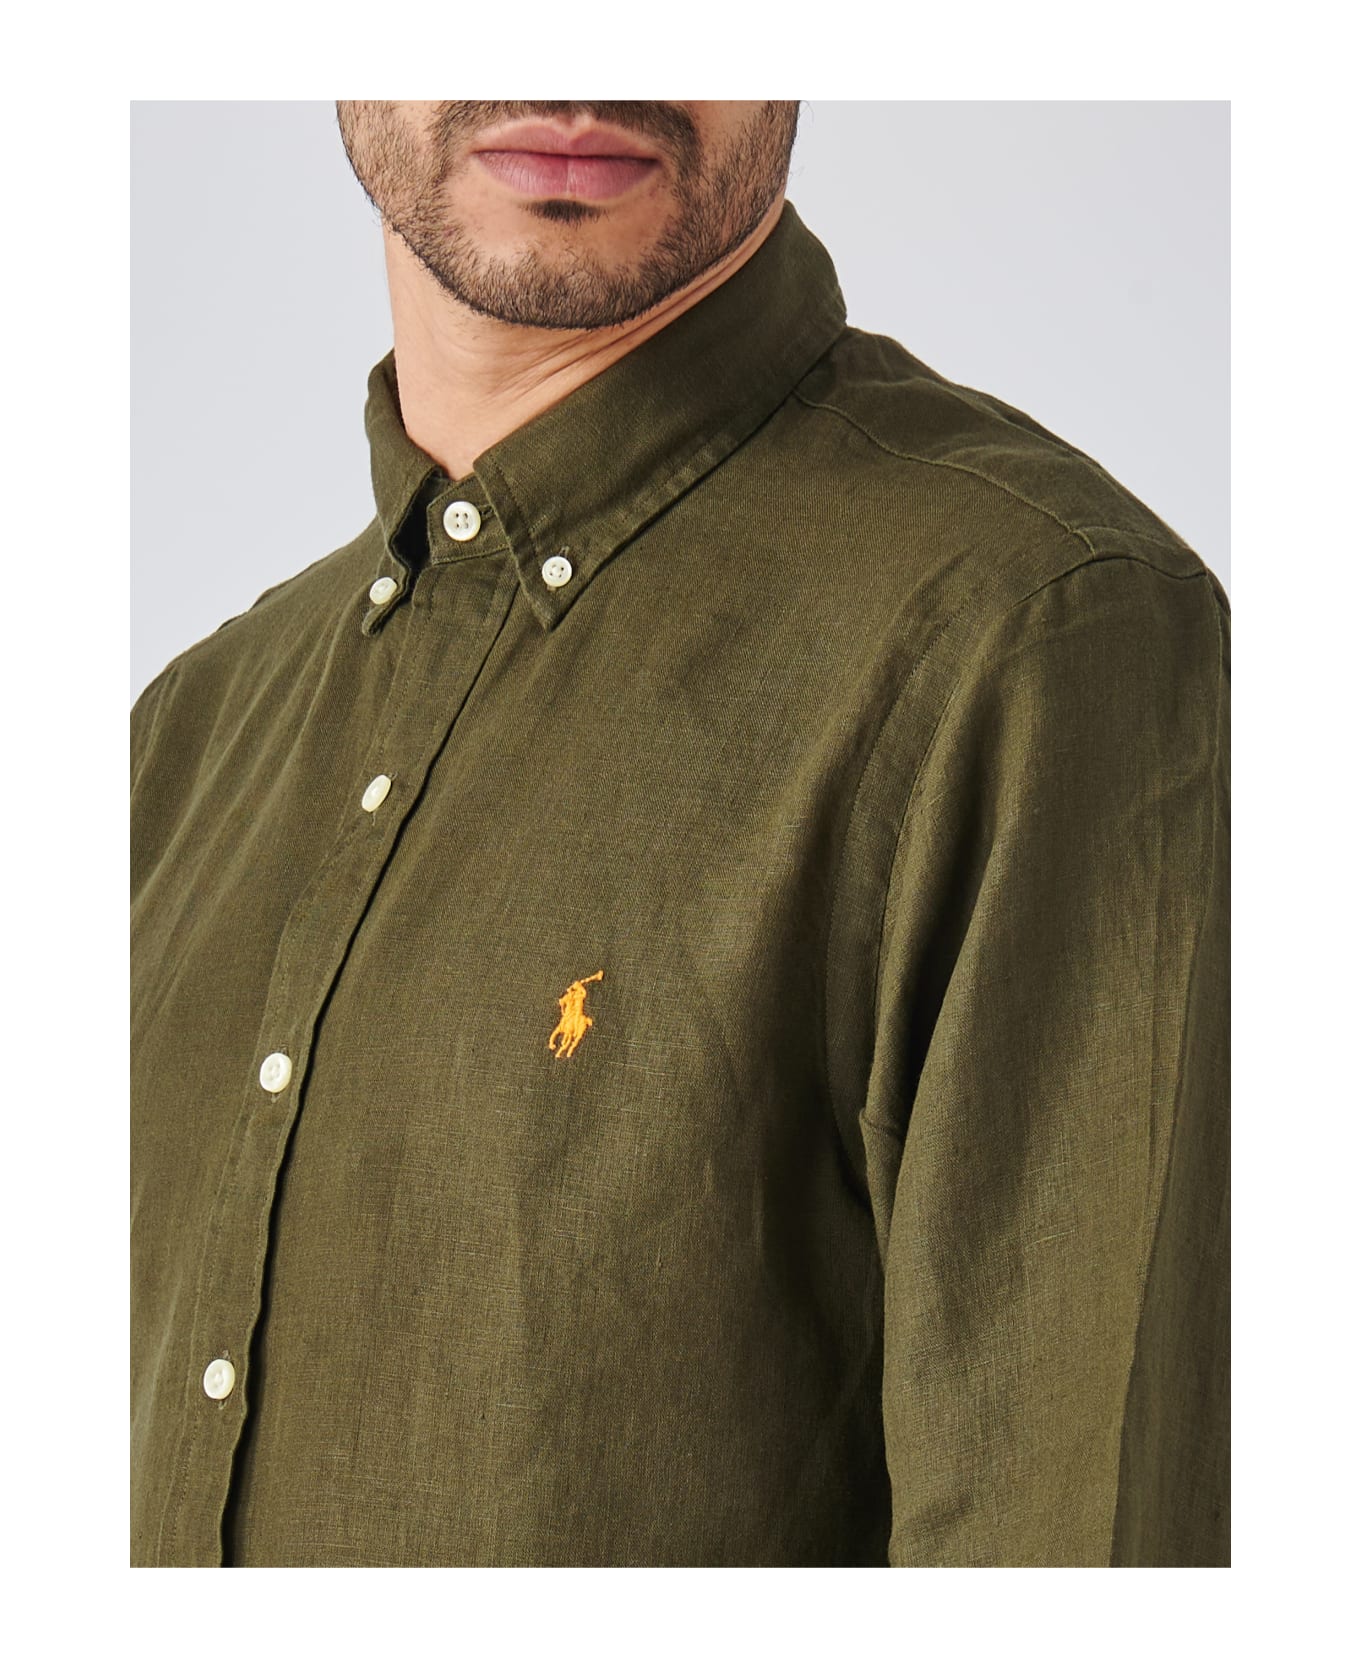 Ralph Lauren Long Sleeve Sport Shirt Shirt - Green